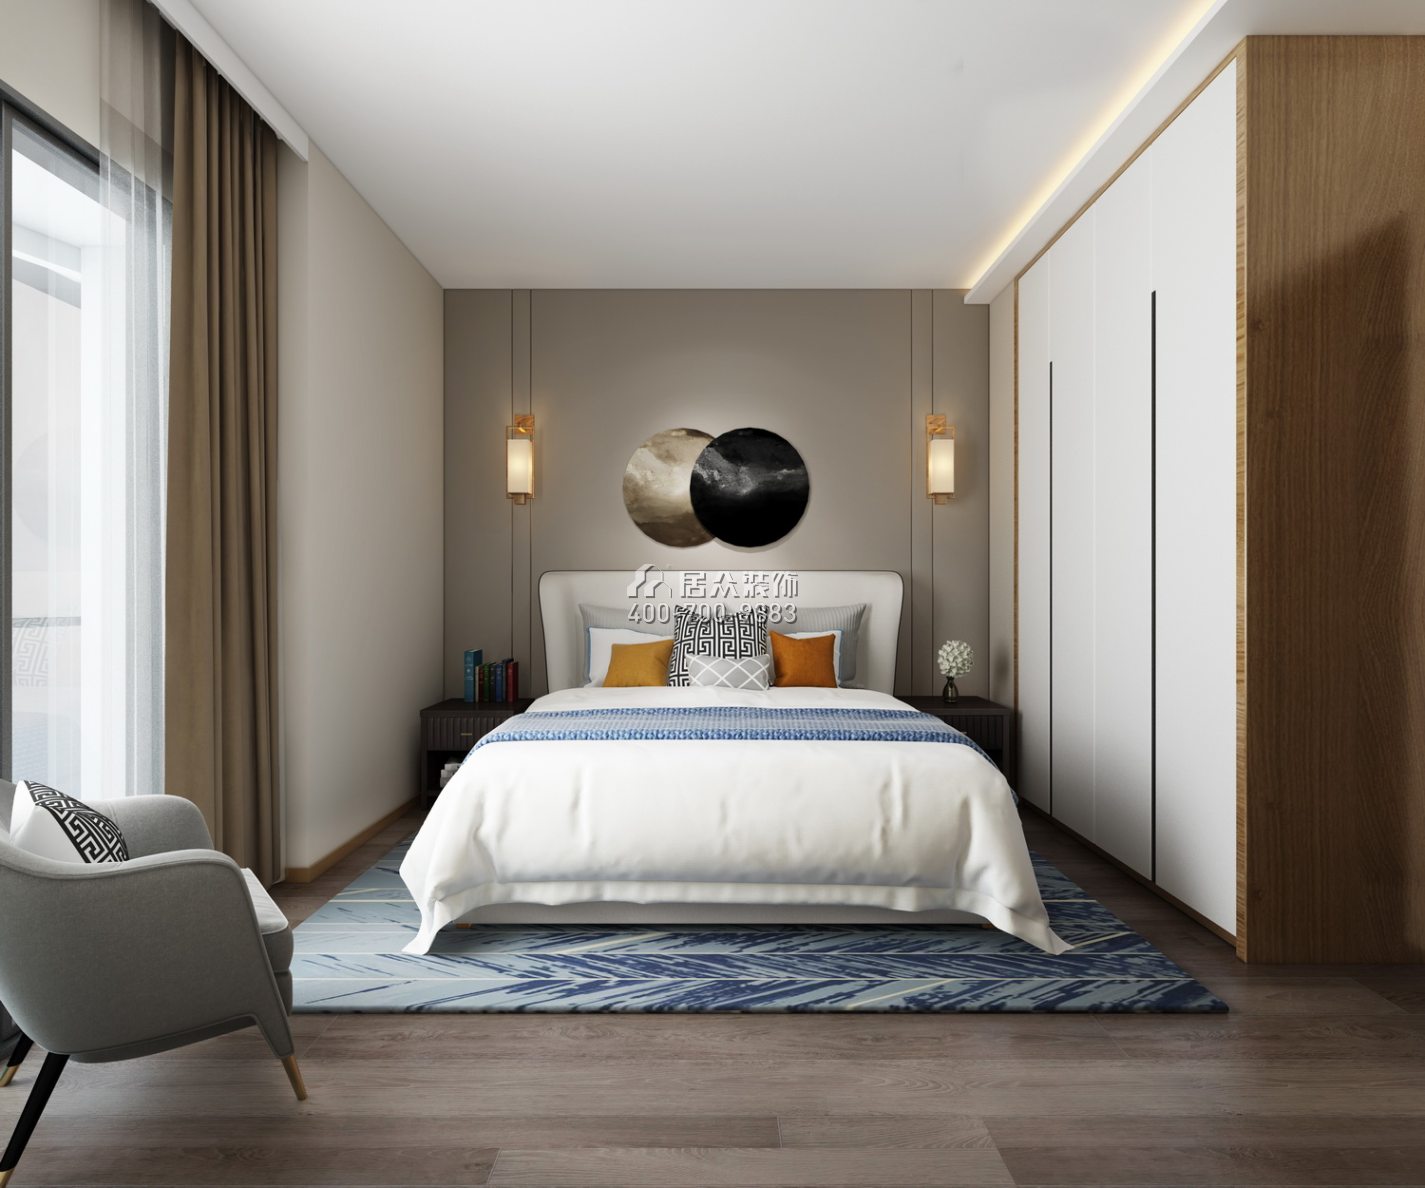 擎天华庭126平方米中式风格平层户型卧室装修效果图